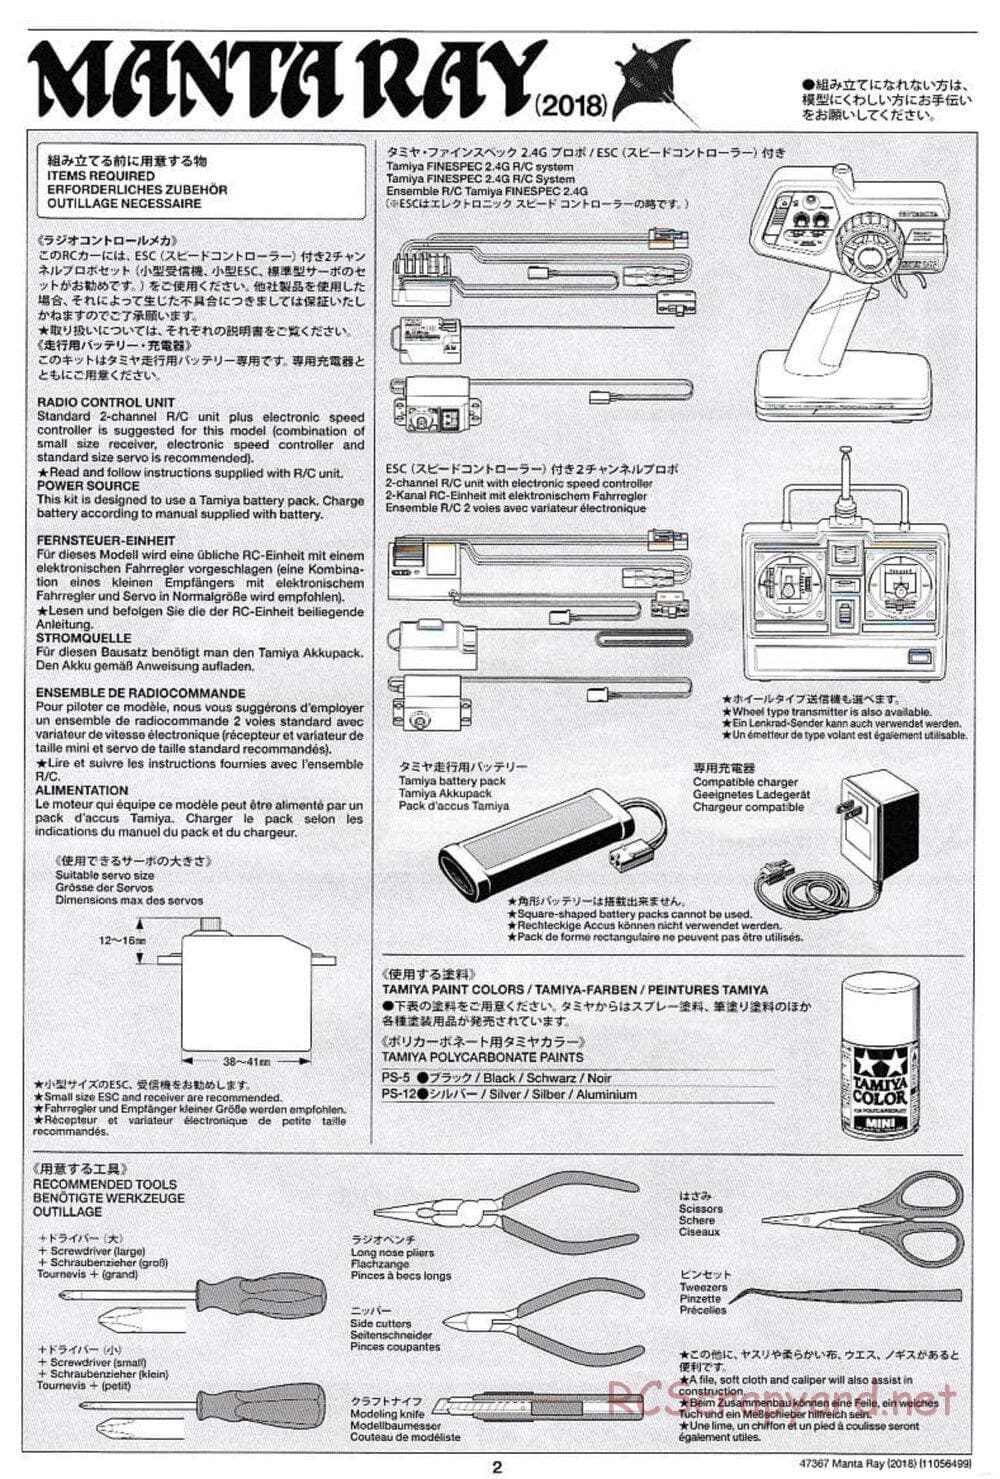 Tamiya - Manta Ray 2018 - DF-01 Chassis - Manual - Page 2